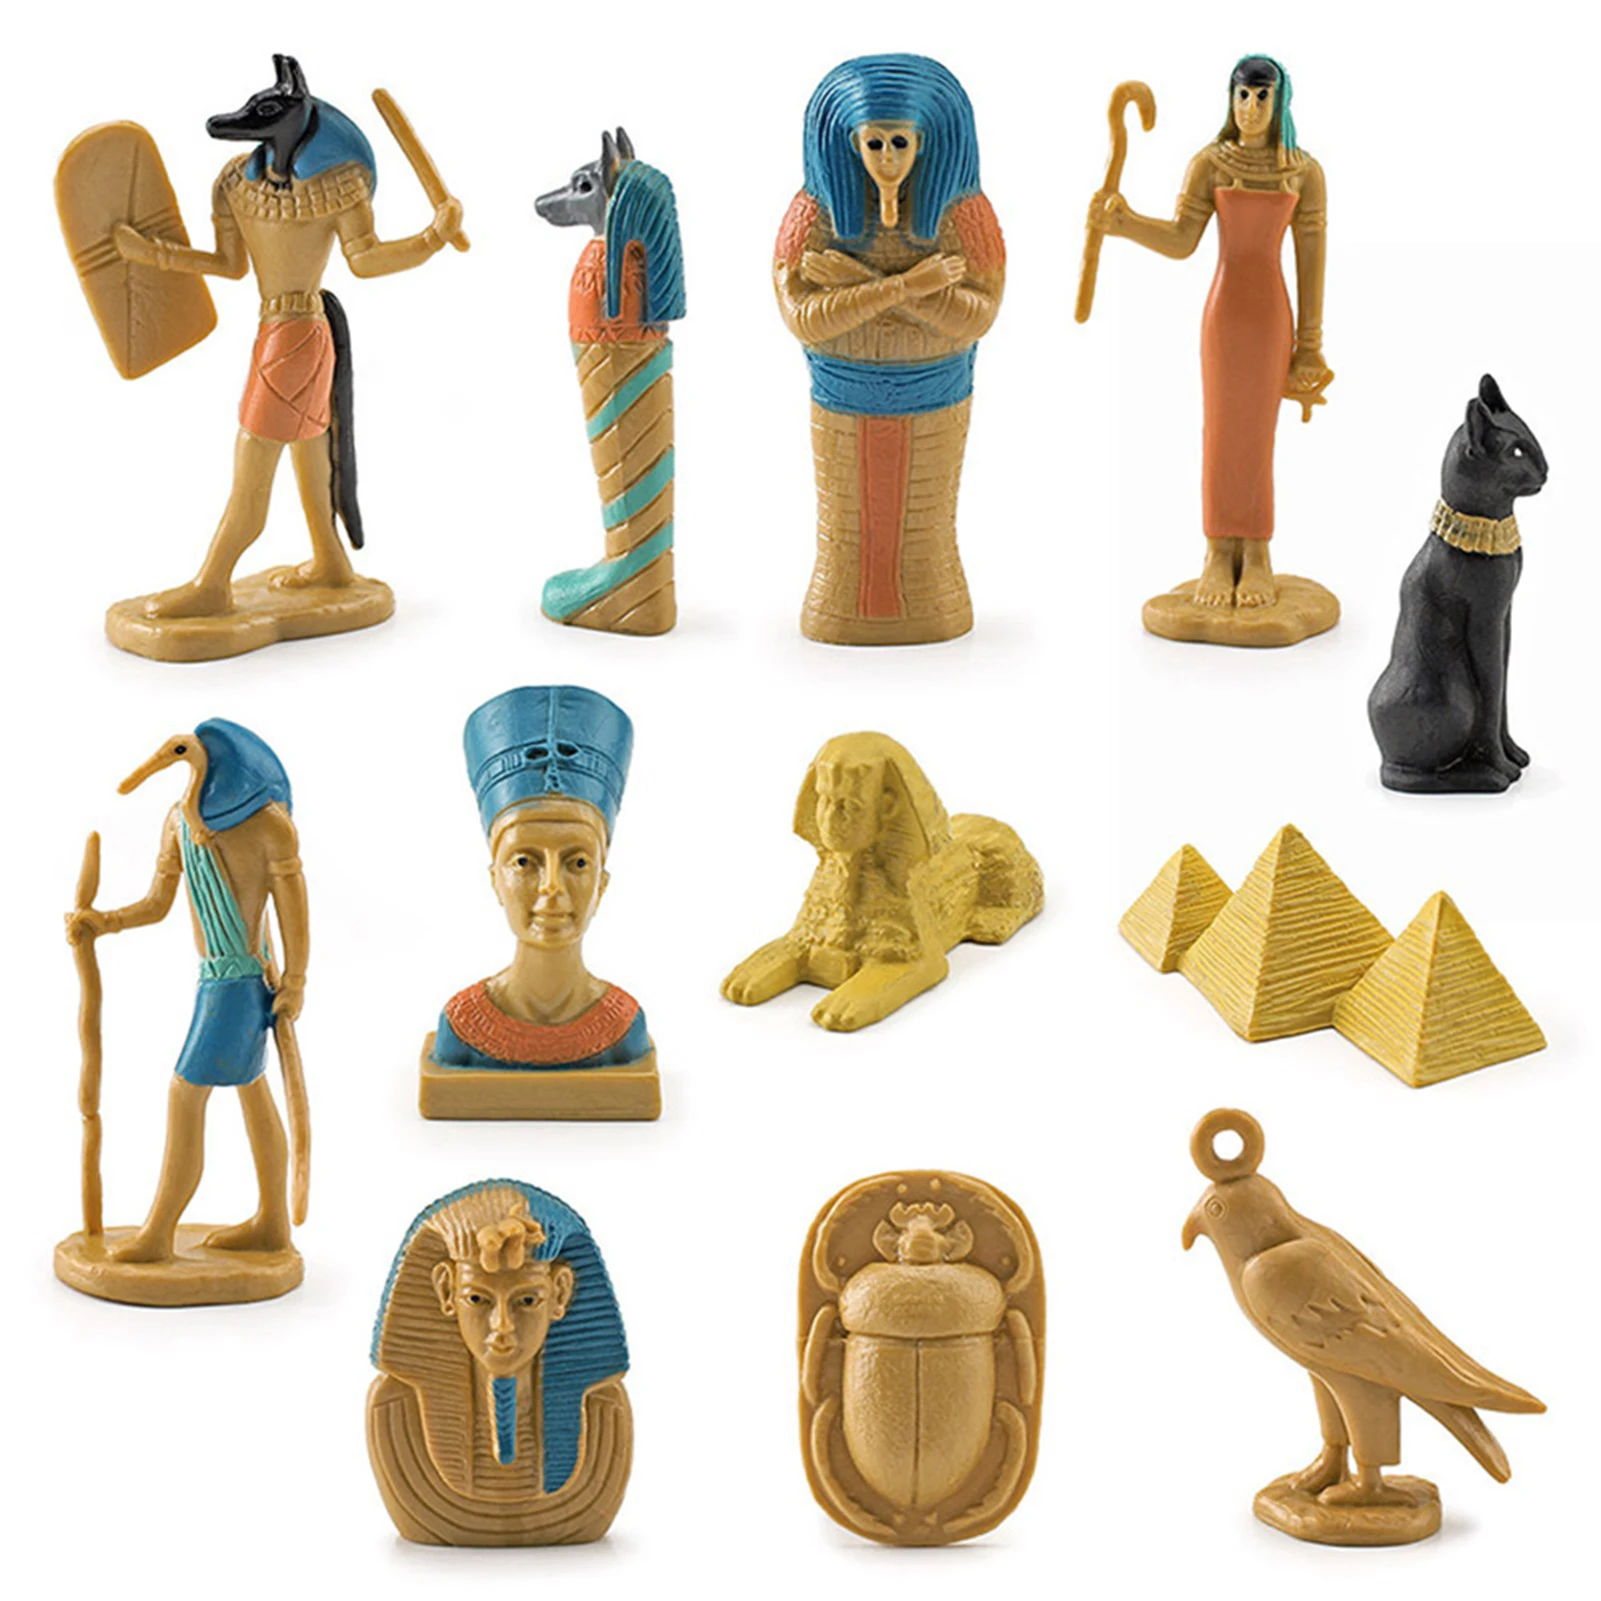 

Имитация египетской пирамиды сфинкса, коробка для мамы, голова тела, Бог и другие модели игрушек